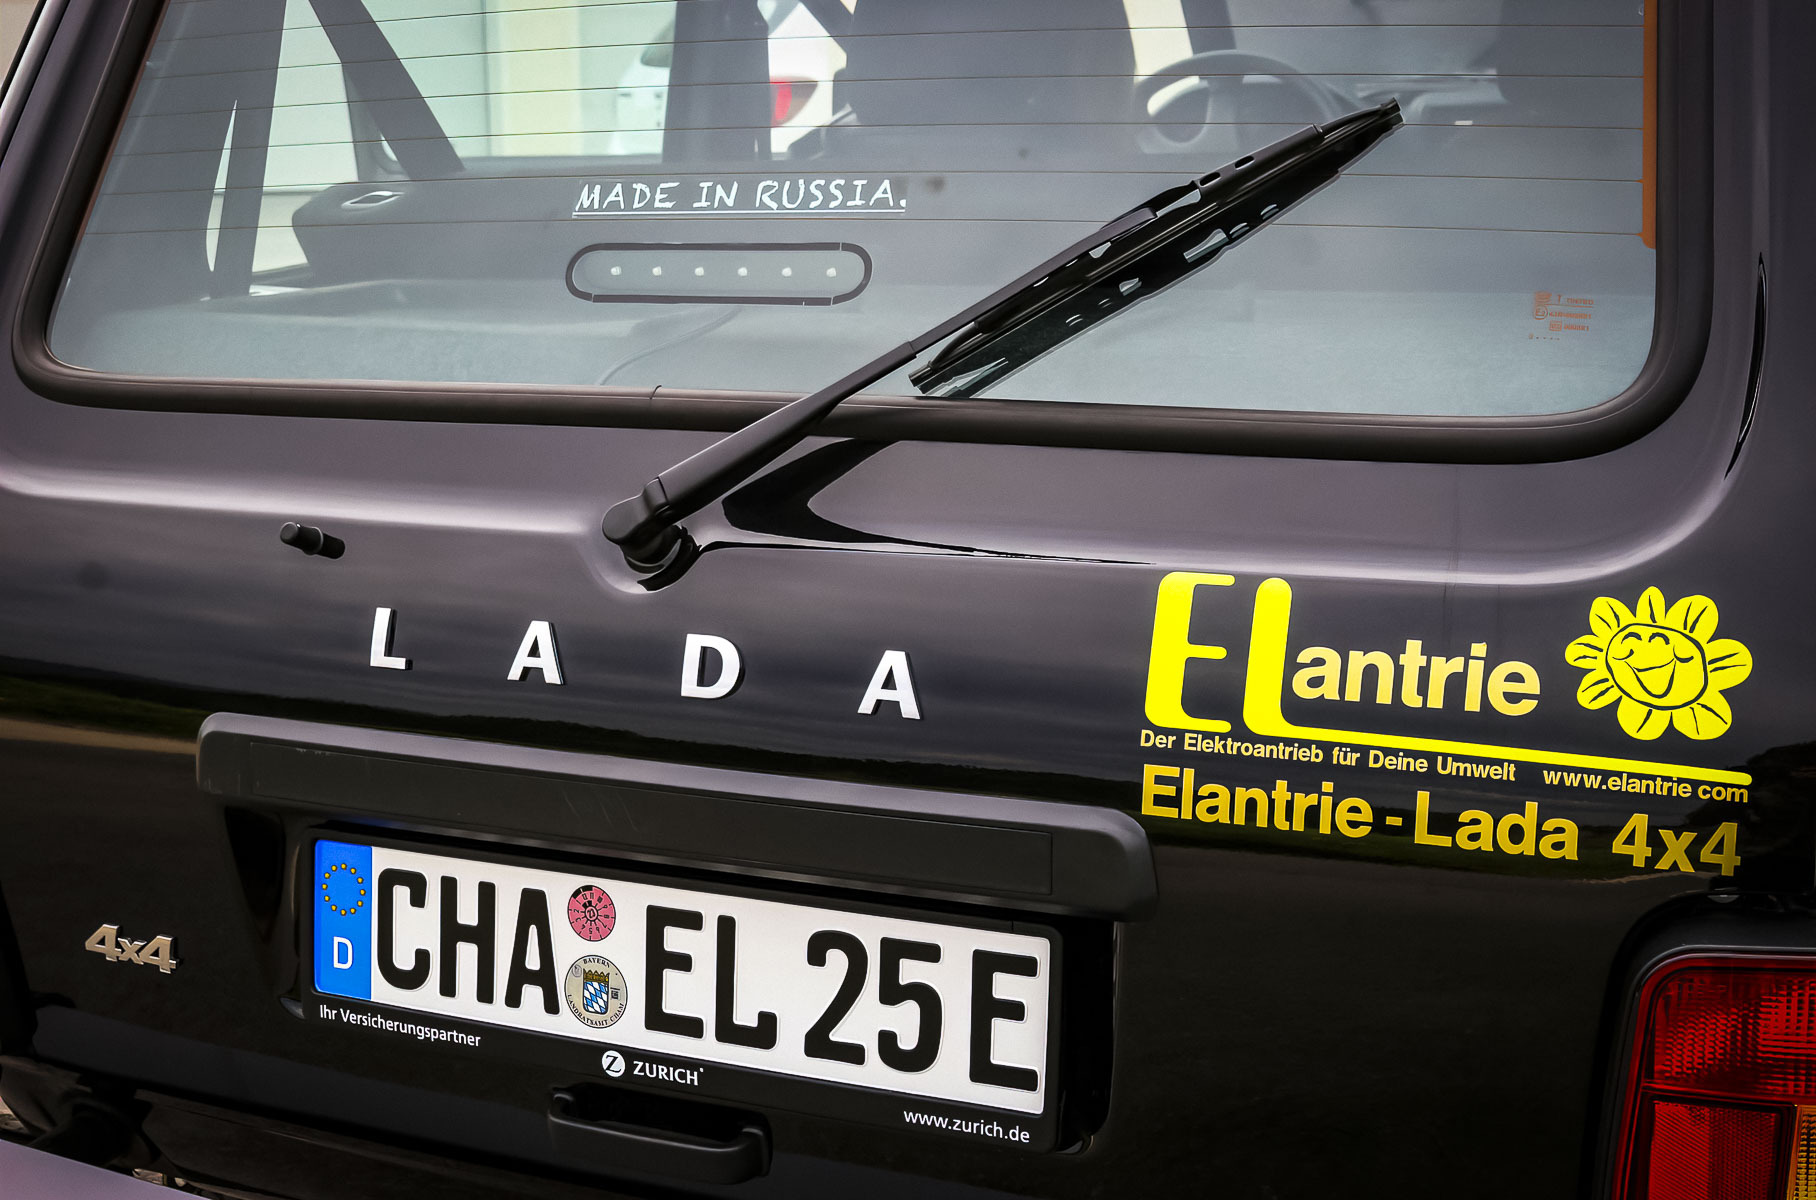 Из Lada Niva сделали электромобиль с запасом хода до 300 километров